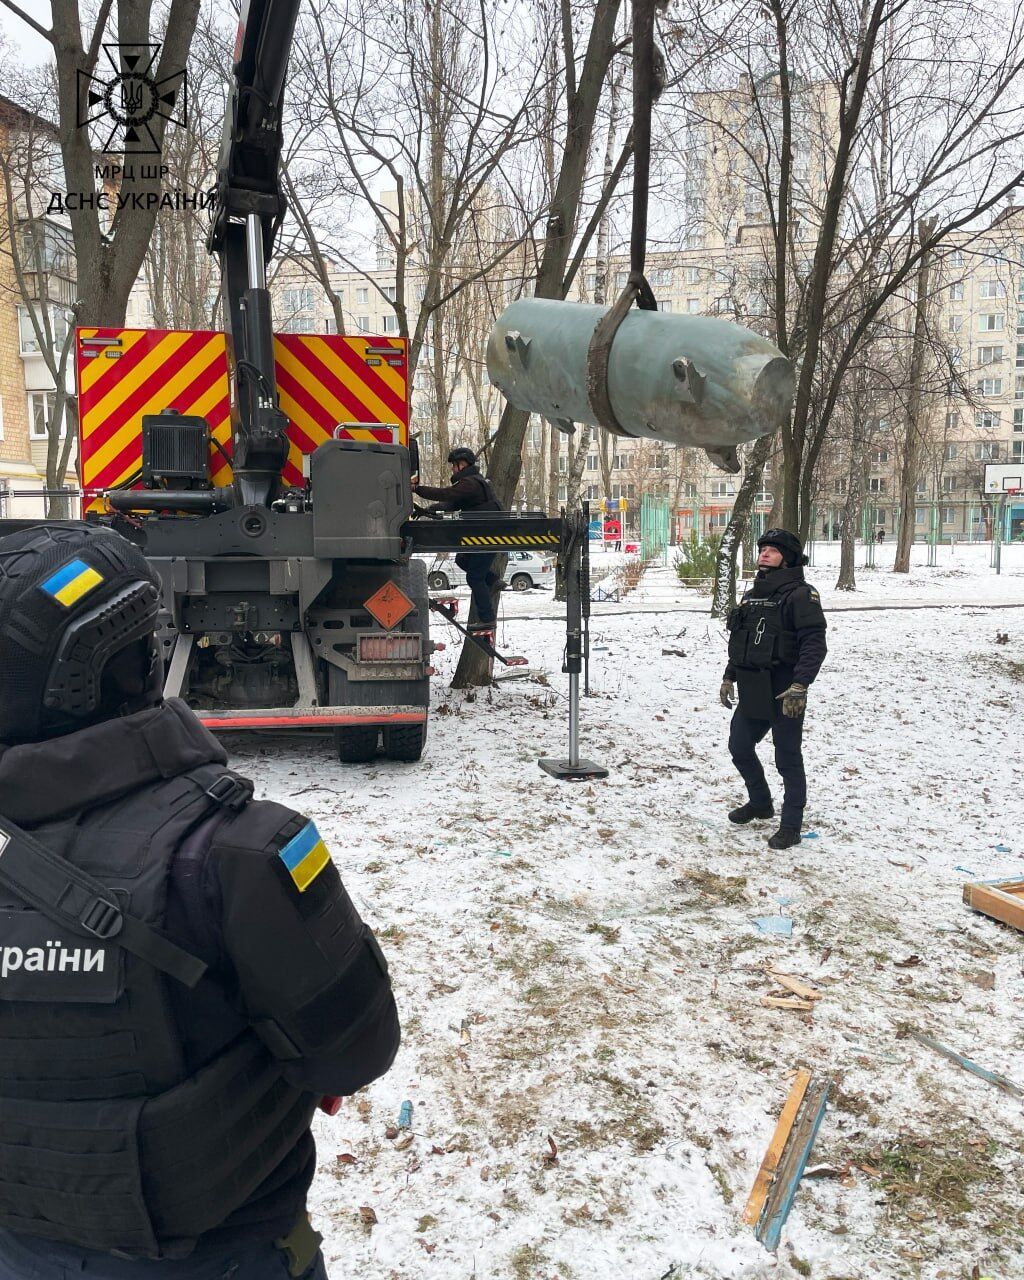 Часть ракеты в квартире и черный от сажи дом: последствия российской атаки на Святошино в Киеве. Фото и видео